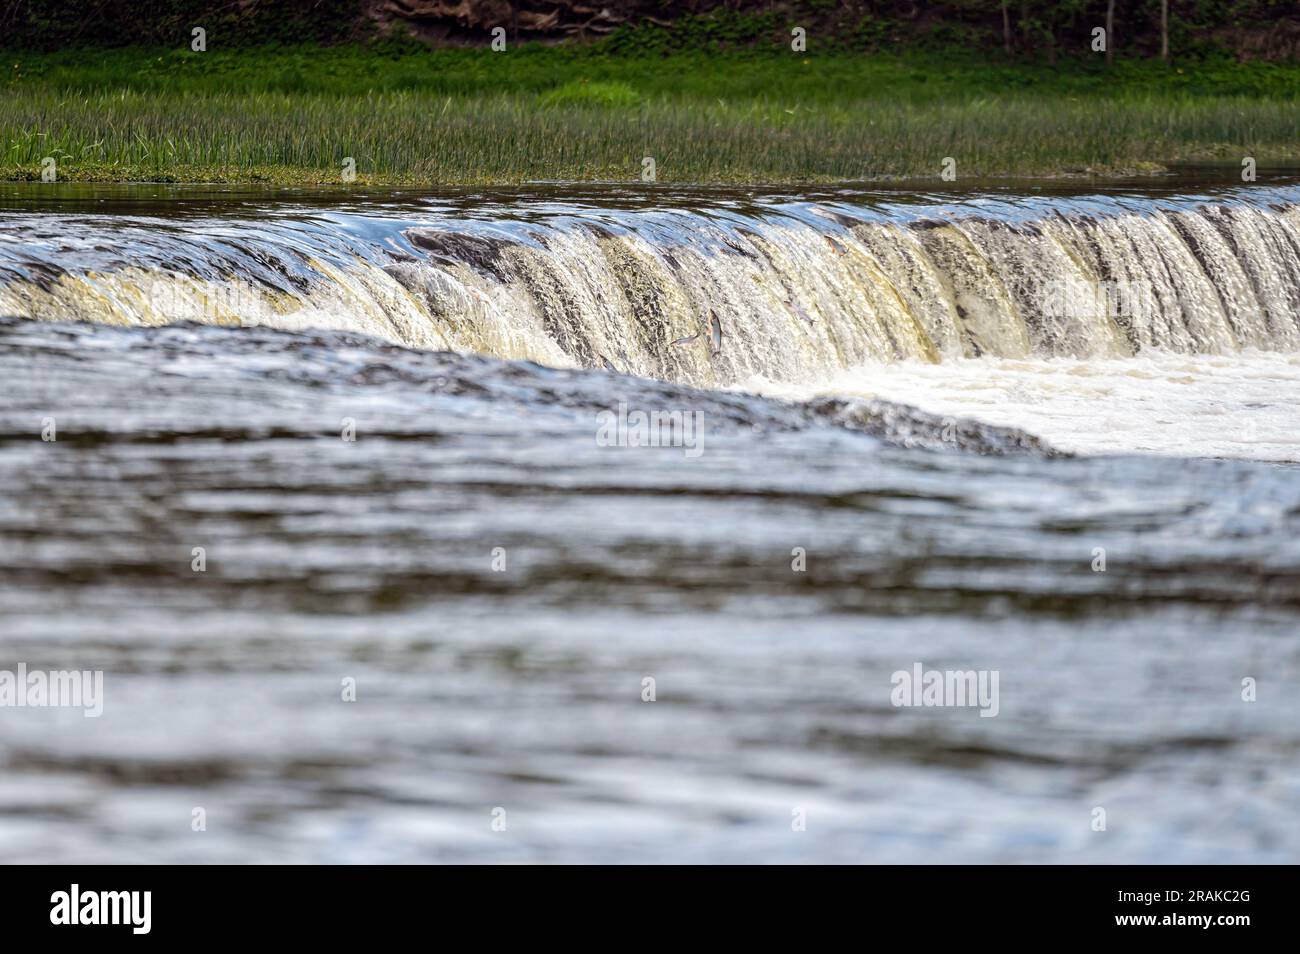 Water splashing through widest rockwaterfall in Europe - Ventas rumba. Kuldiga, Latvia Stock Photo